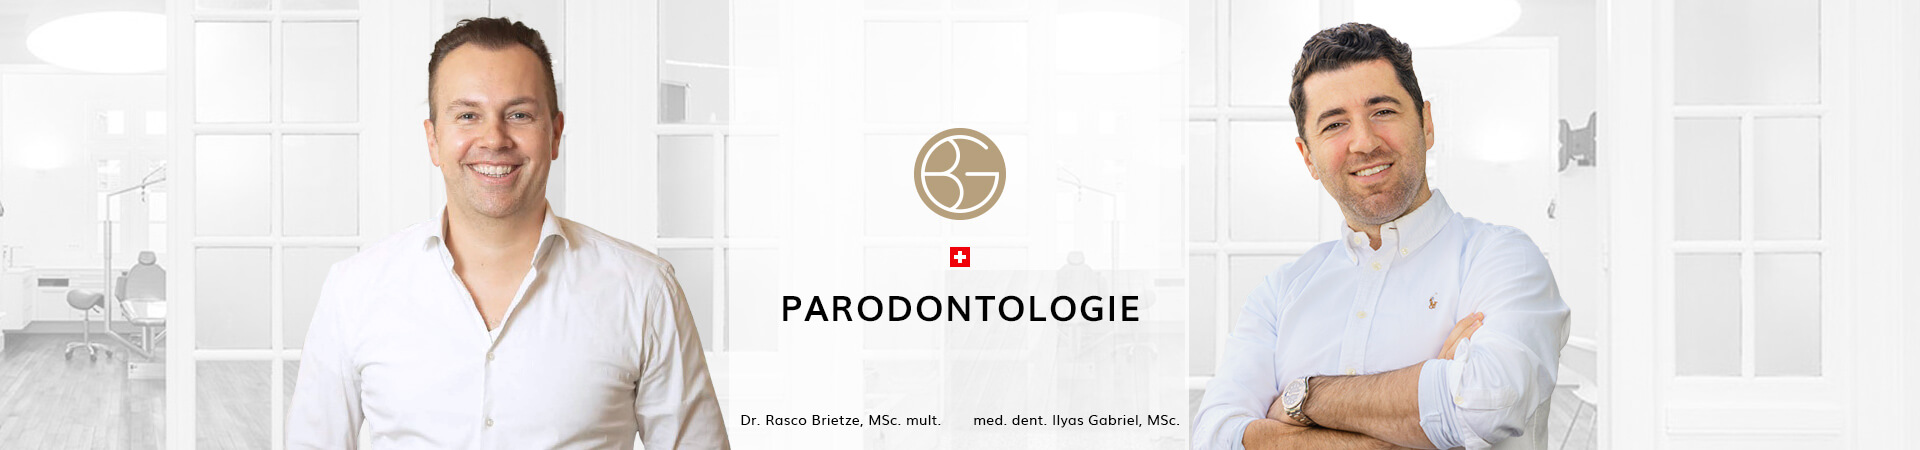 Parodontologie, Zahnärzte Ebmatingen, Dr. Brietze & Dr. Gabriel 